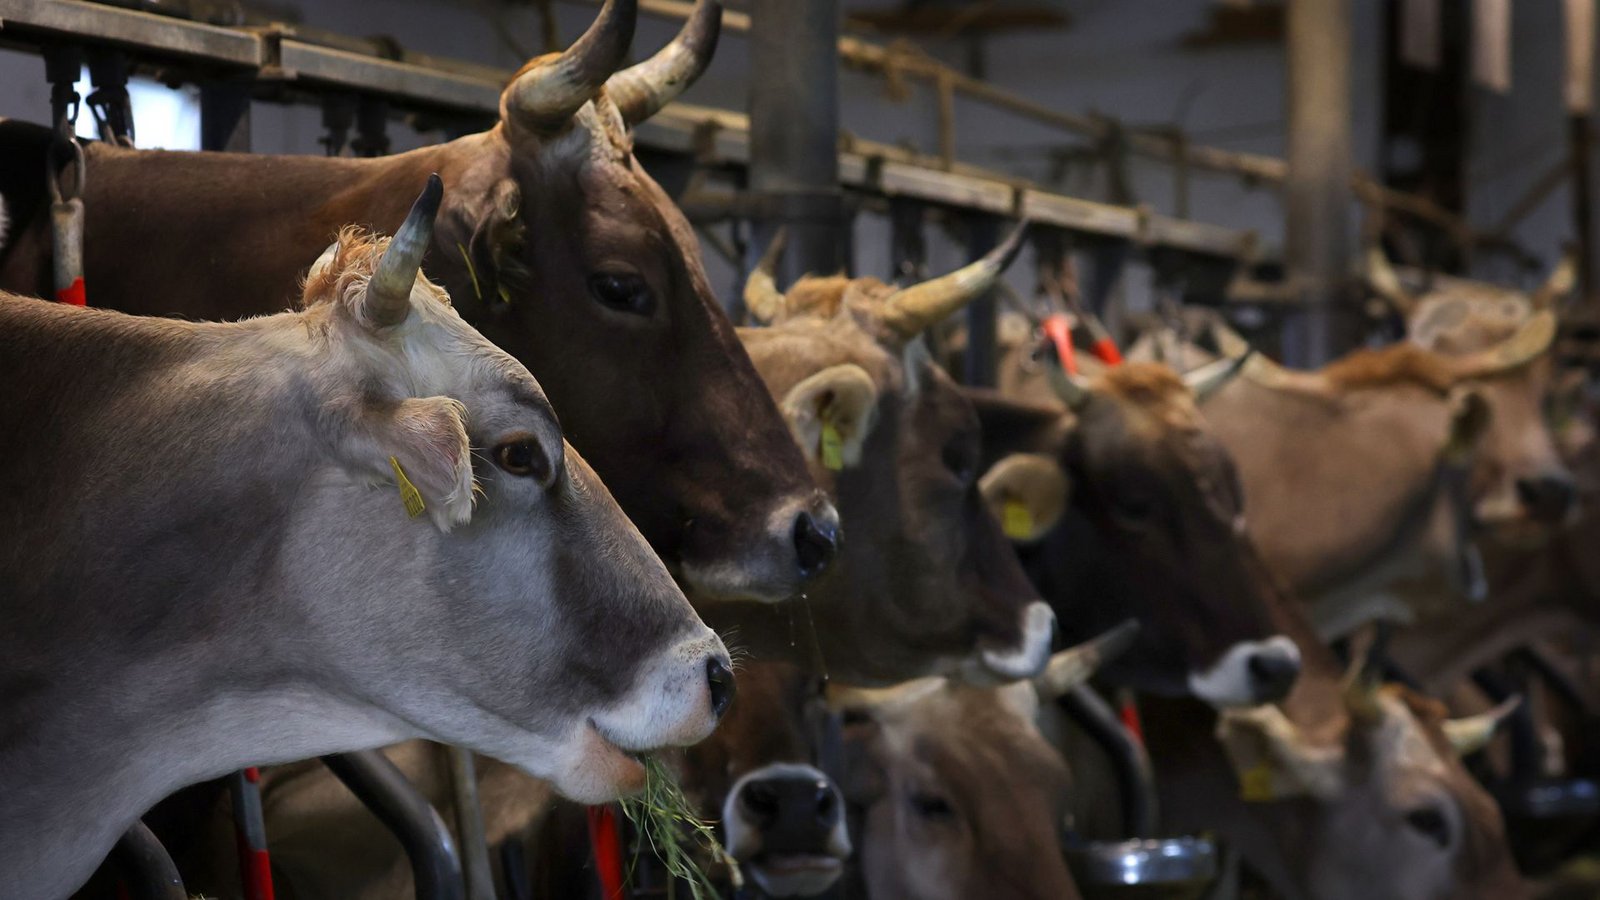 Frisches Heu und ein sauberer Stall – so sollte es Kühen  auf einem Bauernhof gehen, doch bei dem angeklagten Landwirt  sah das anders aus. (Symbolbild)Foto: dpa/Karl-Josef Hildenbrand